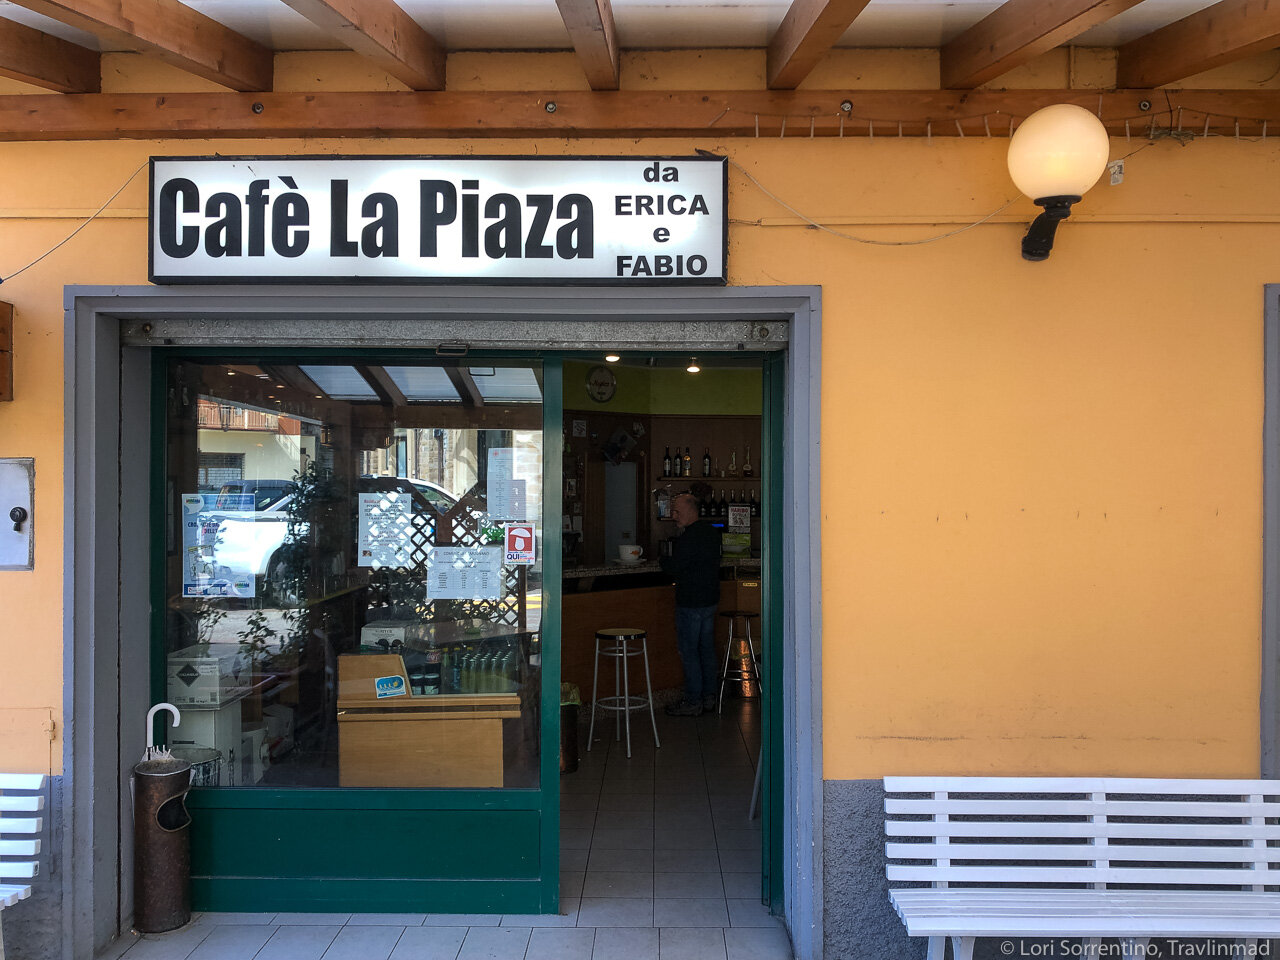 Cafe La Piazza da Erica e Fabio